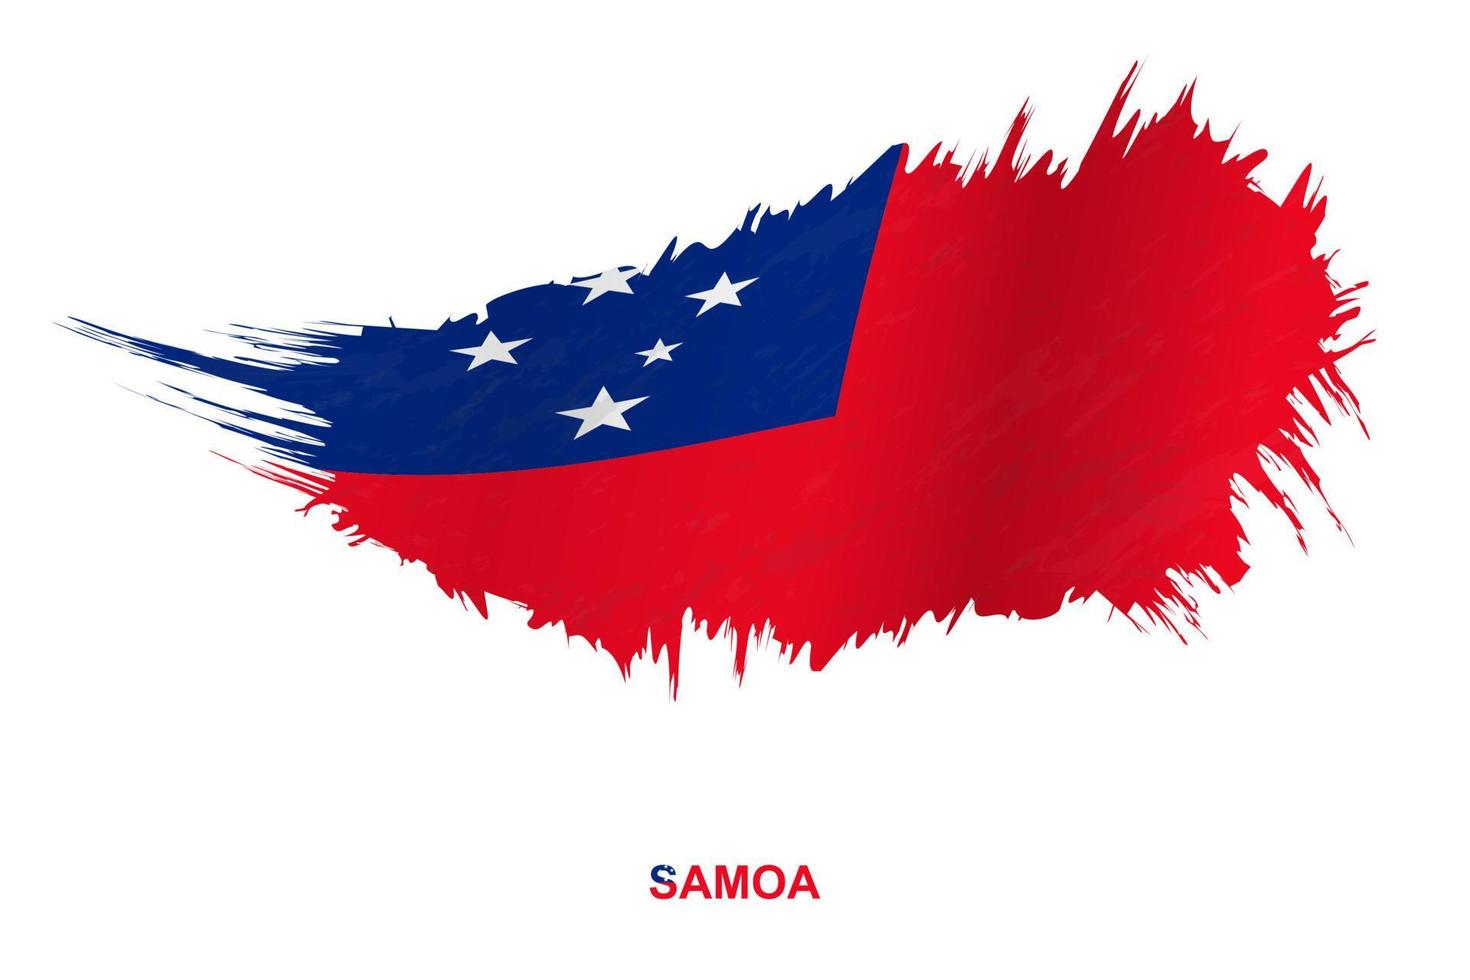 bandeira de samoa em estilo grunge com efeito acenando. vetor